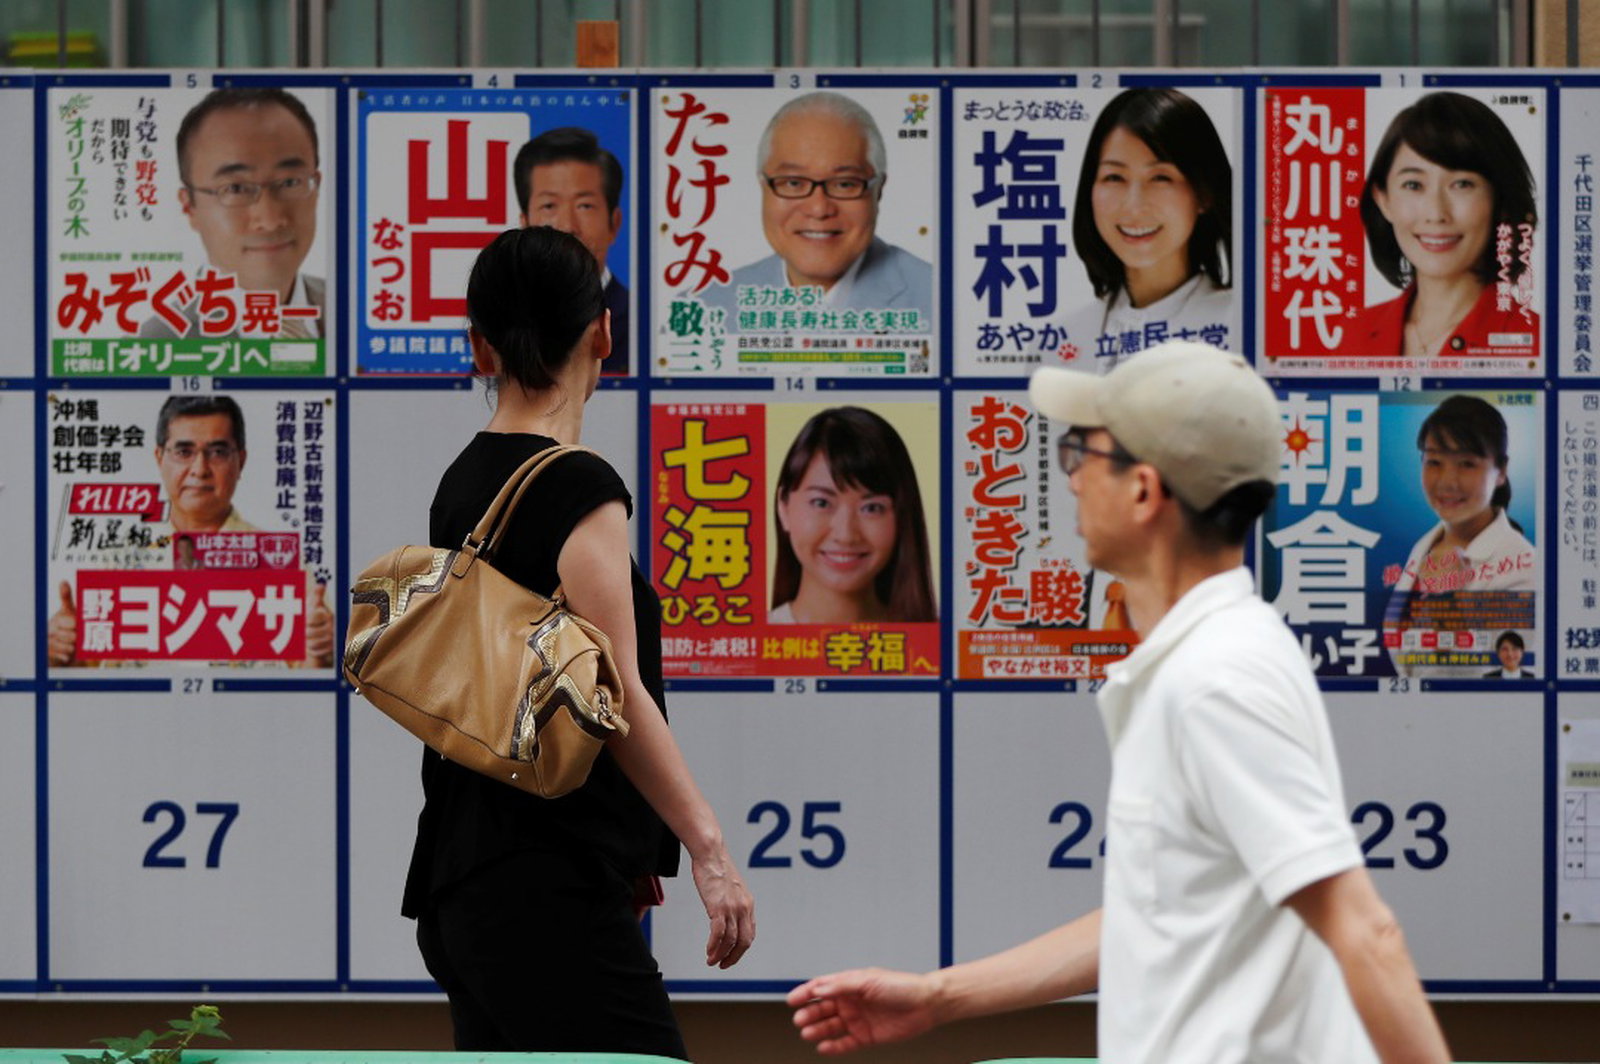 东京市民周日在投票前，仔细阅读墙上竞选海报。日本这次选举共有104名女性候选人参选，创下历年新高。